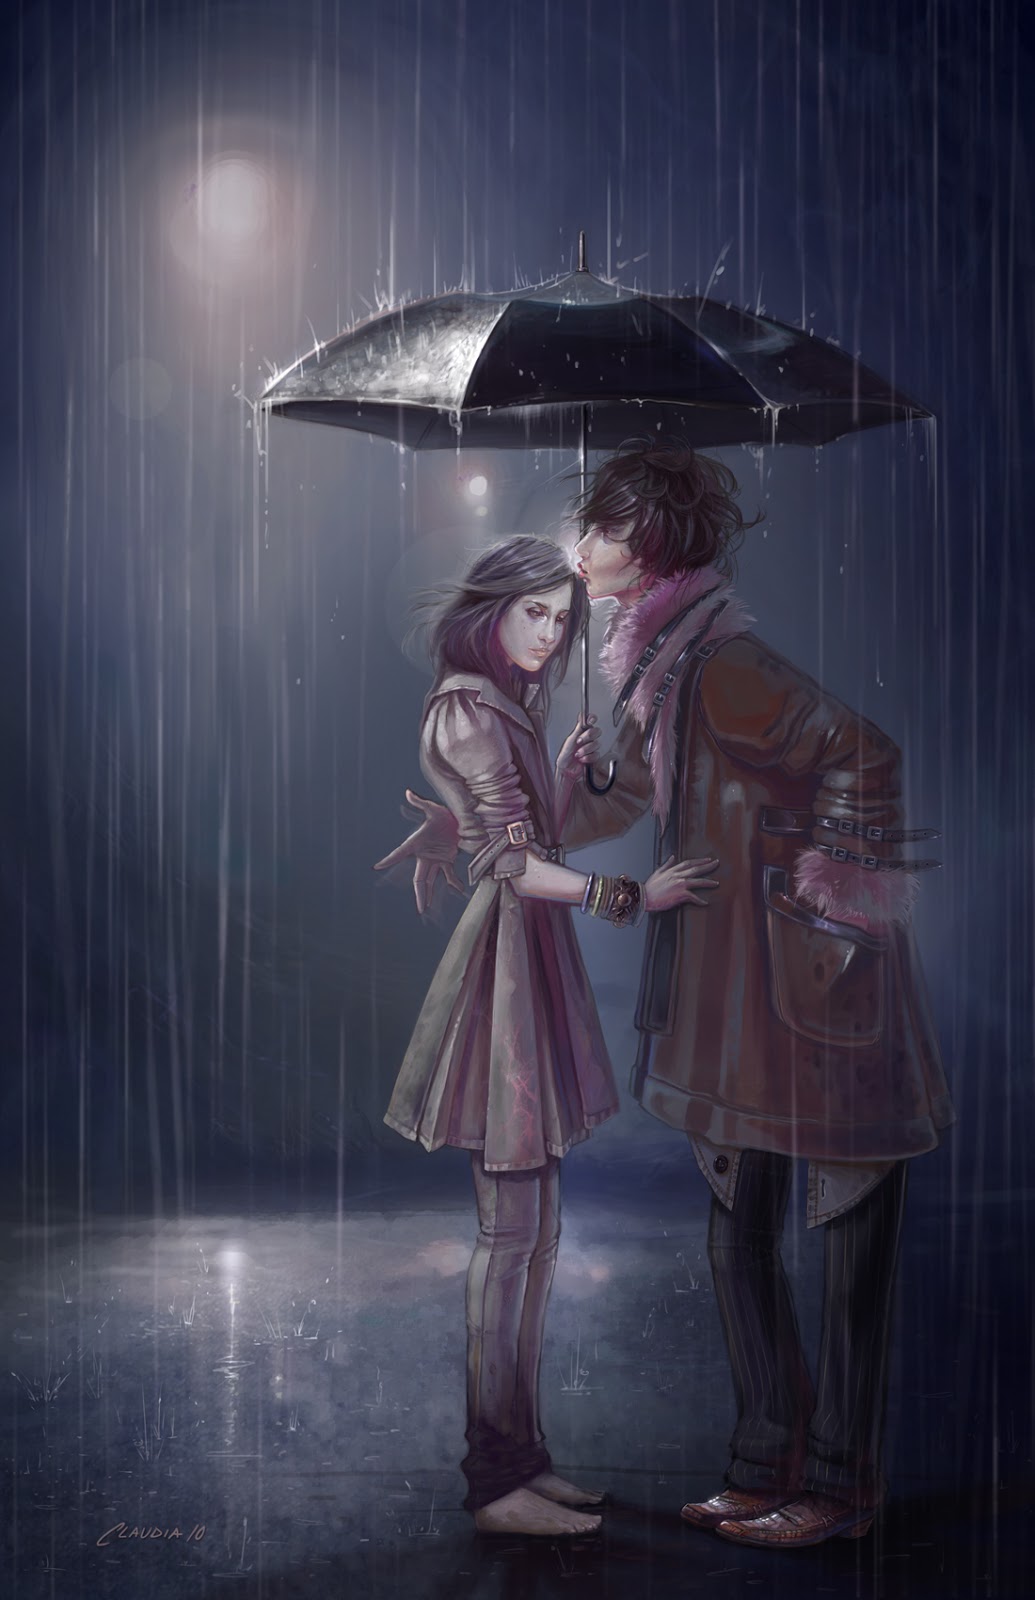 ... Rain_2d_illustration_winter_rain_umbrella_girl_female_woman_picture